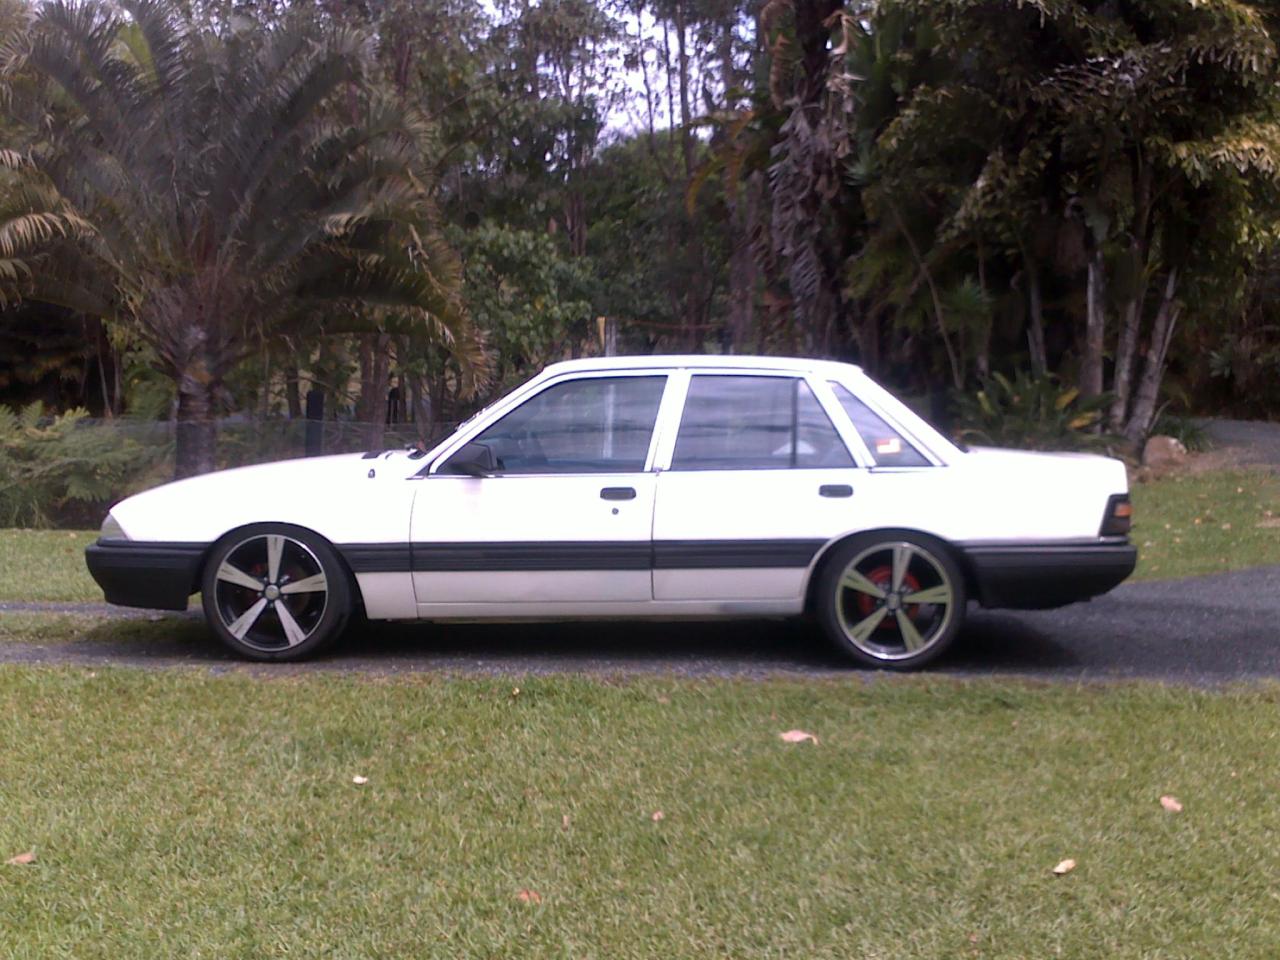  Holden Commodore Vl